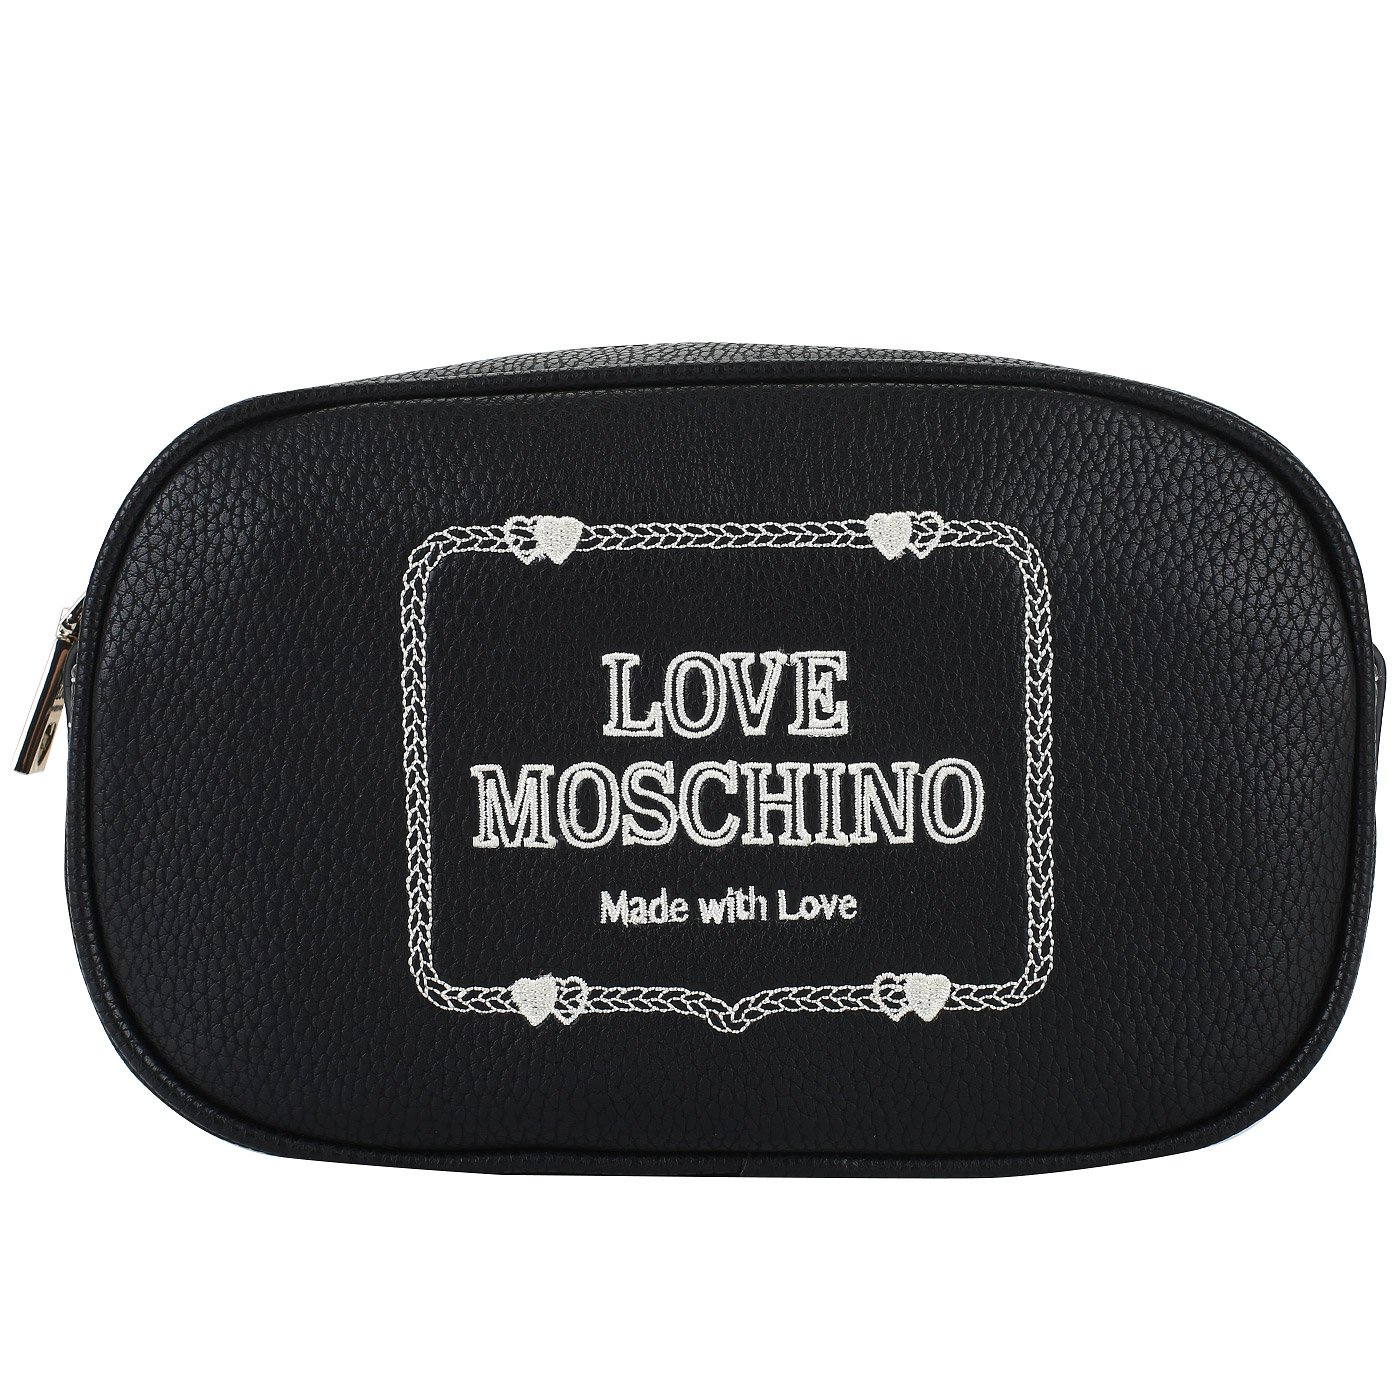 Поясная сумочка на молнии Love Moschino Made with Love